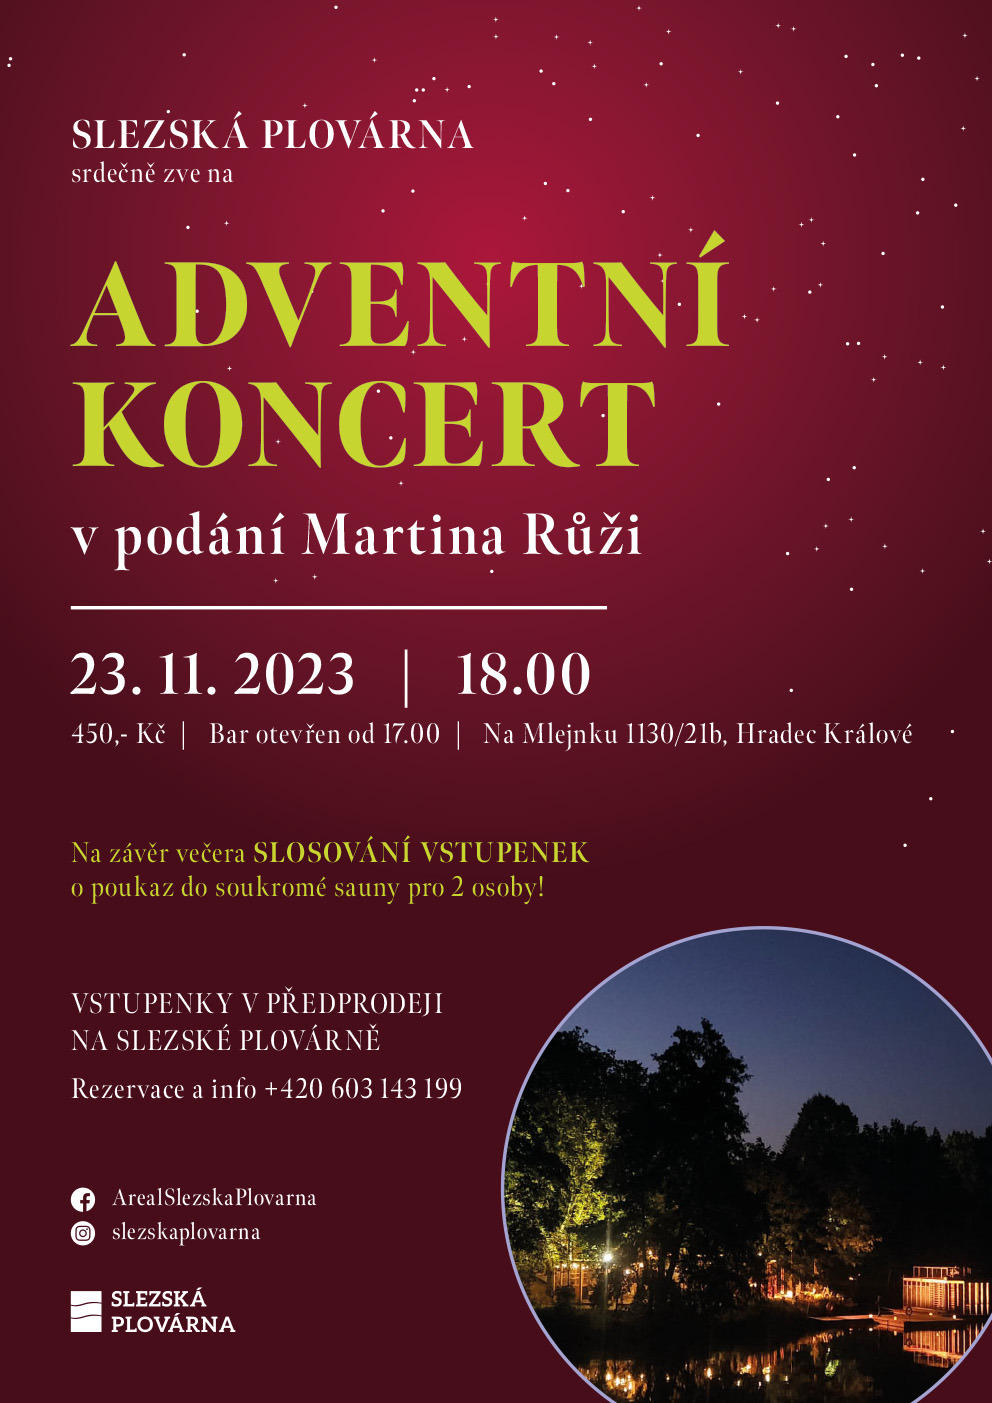 Adventní koncert v podání Martina Růži